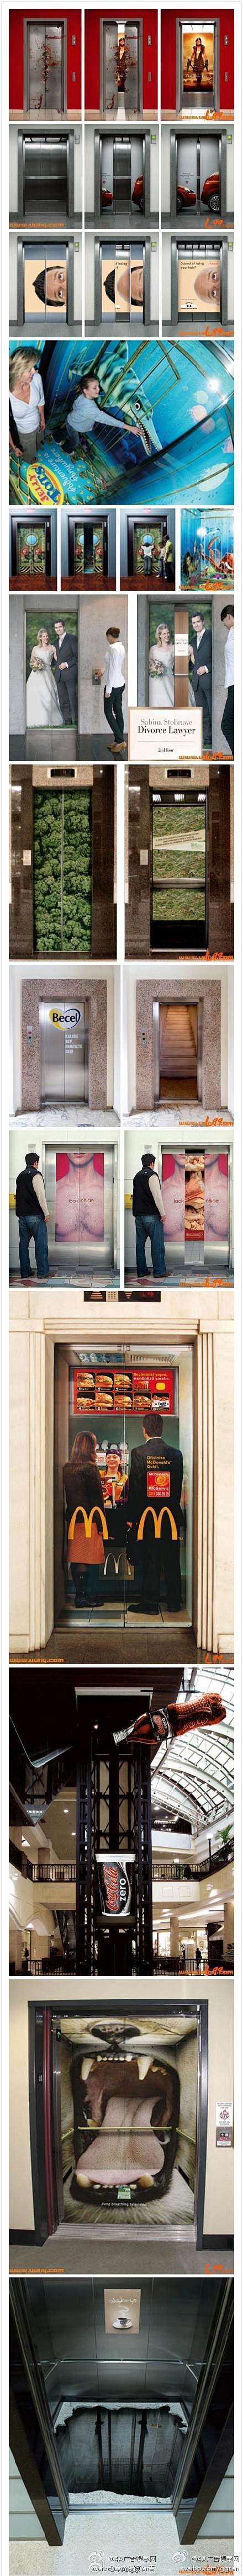 一组电梯里的创意广告。。。